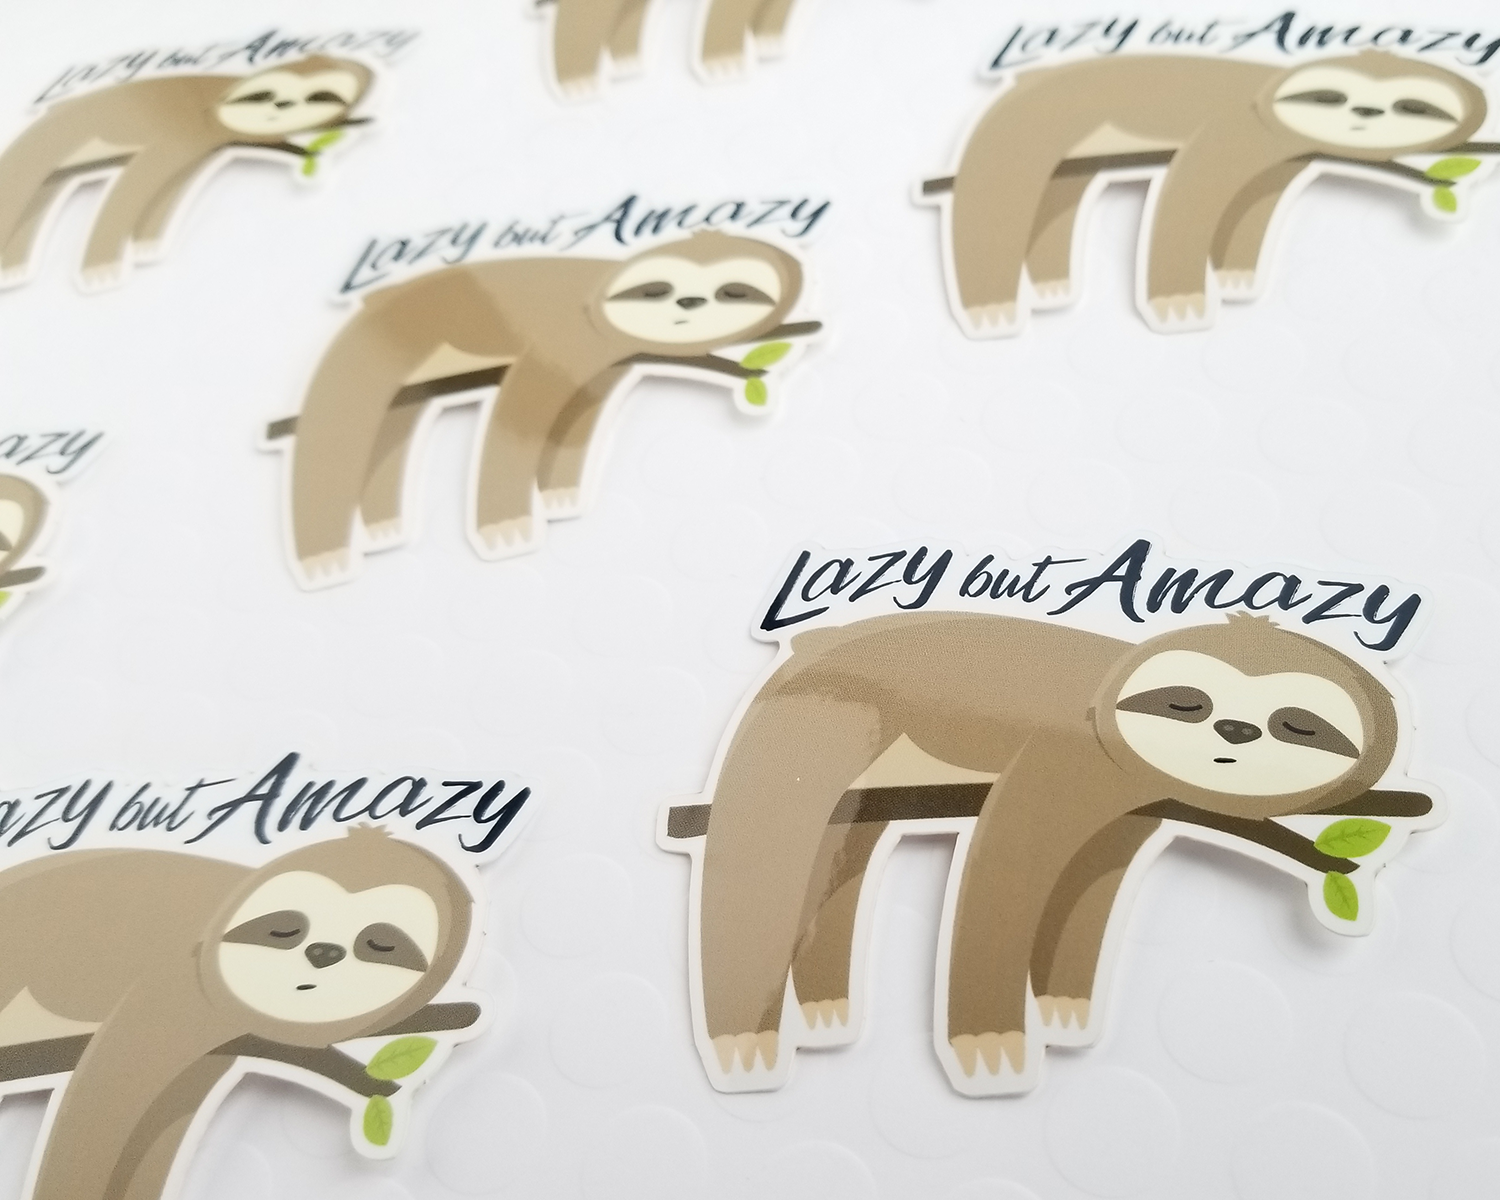 Sloth Lazy but Amazy Sticker